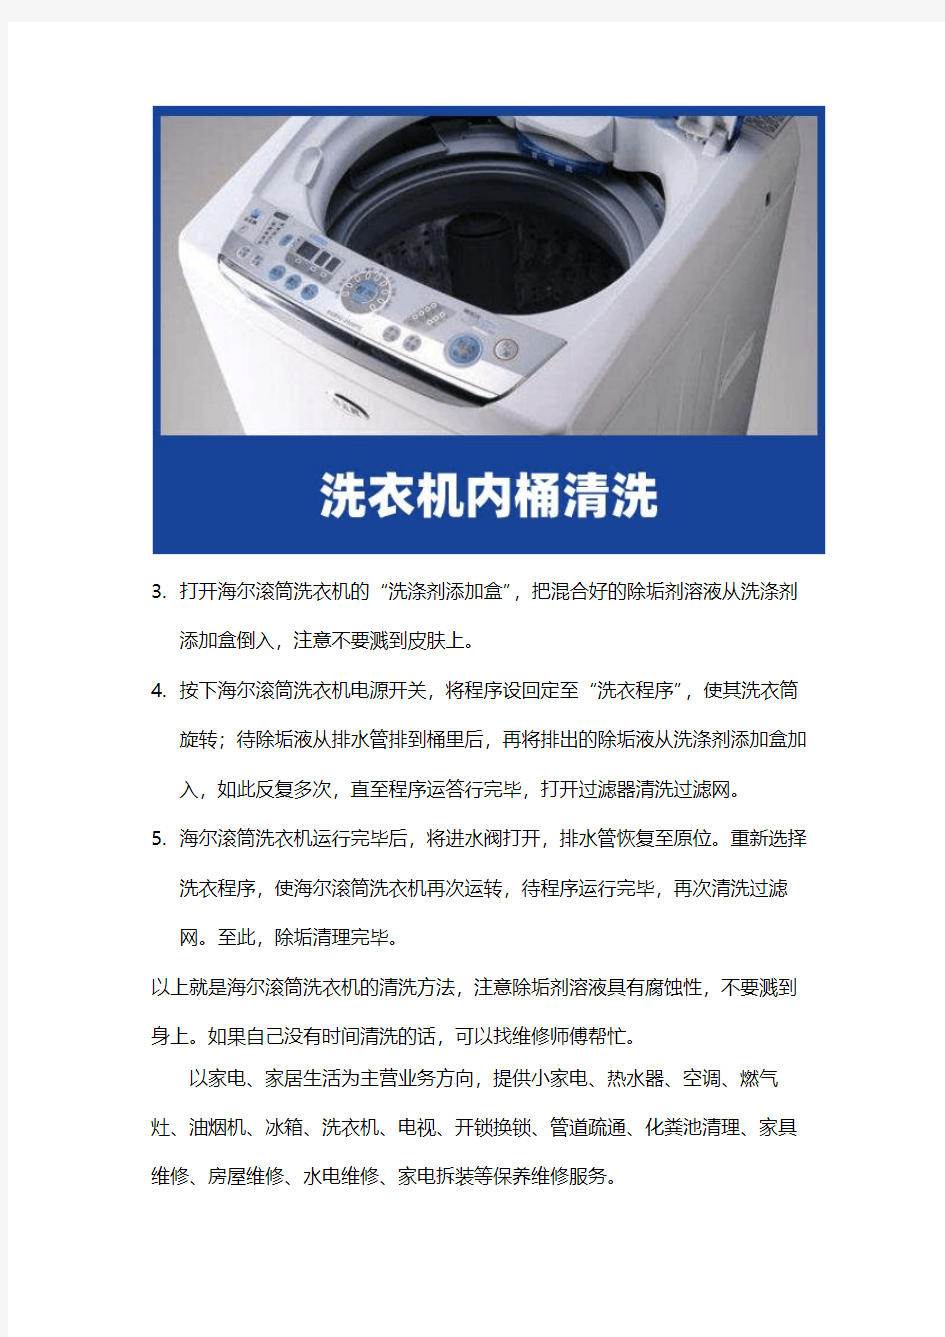 海尔洗衣机维修：清洗污垢